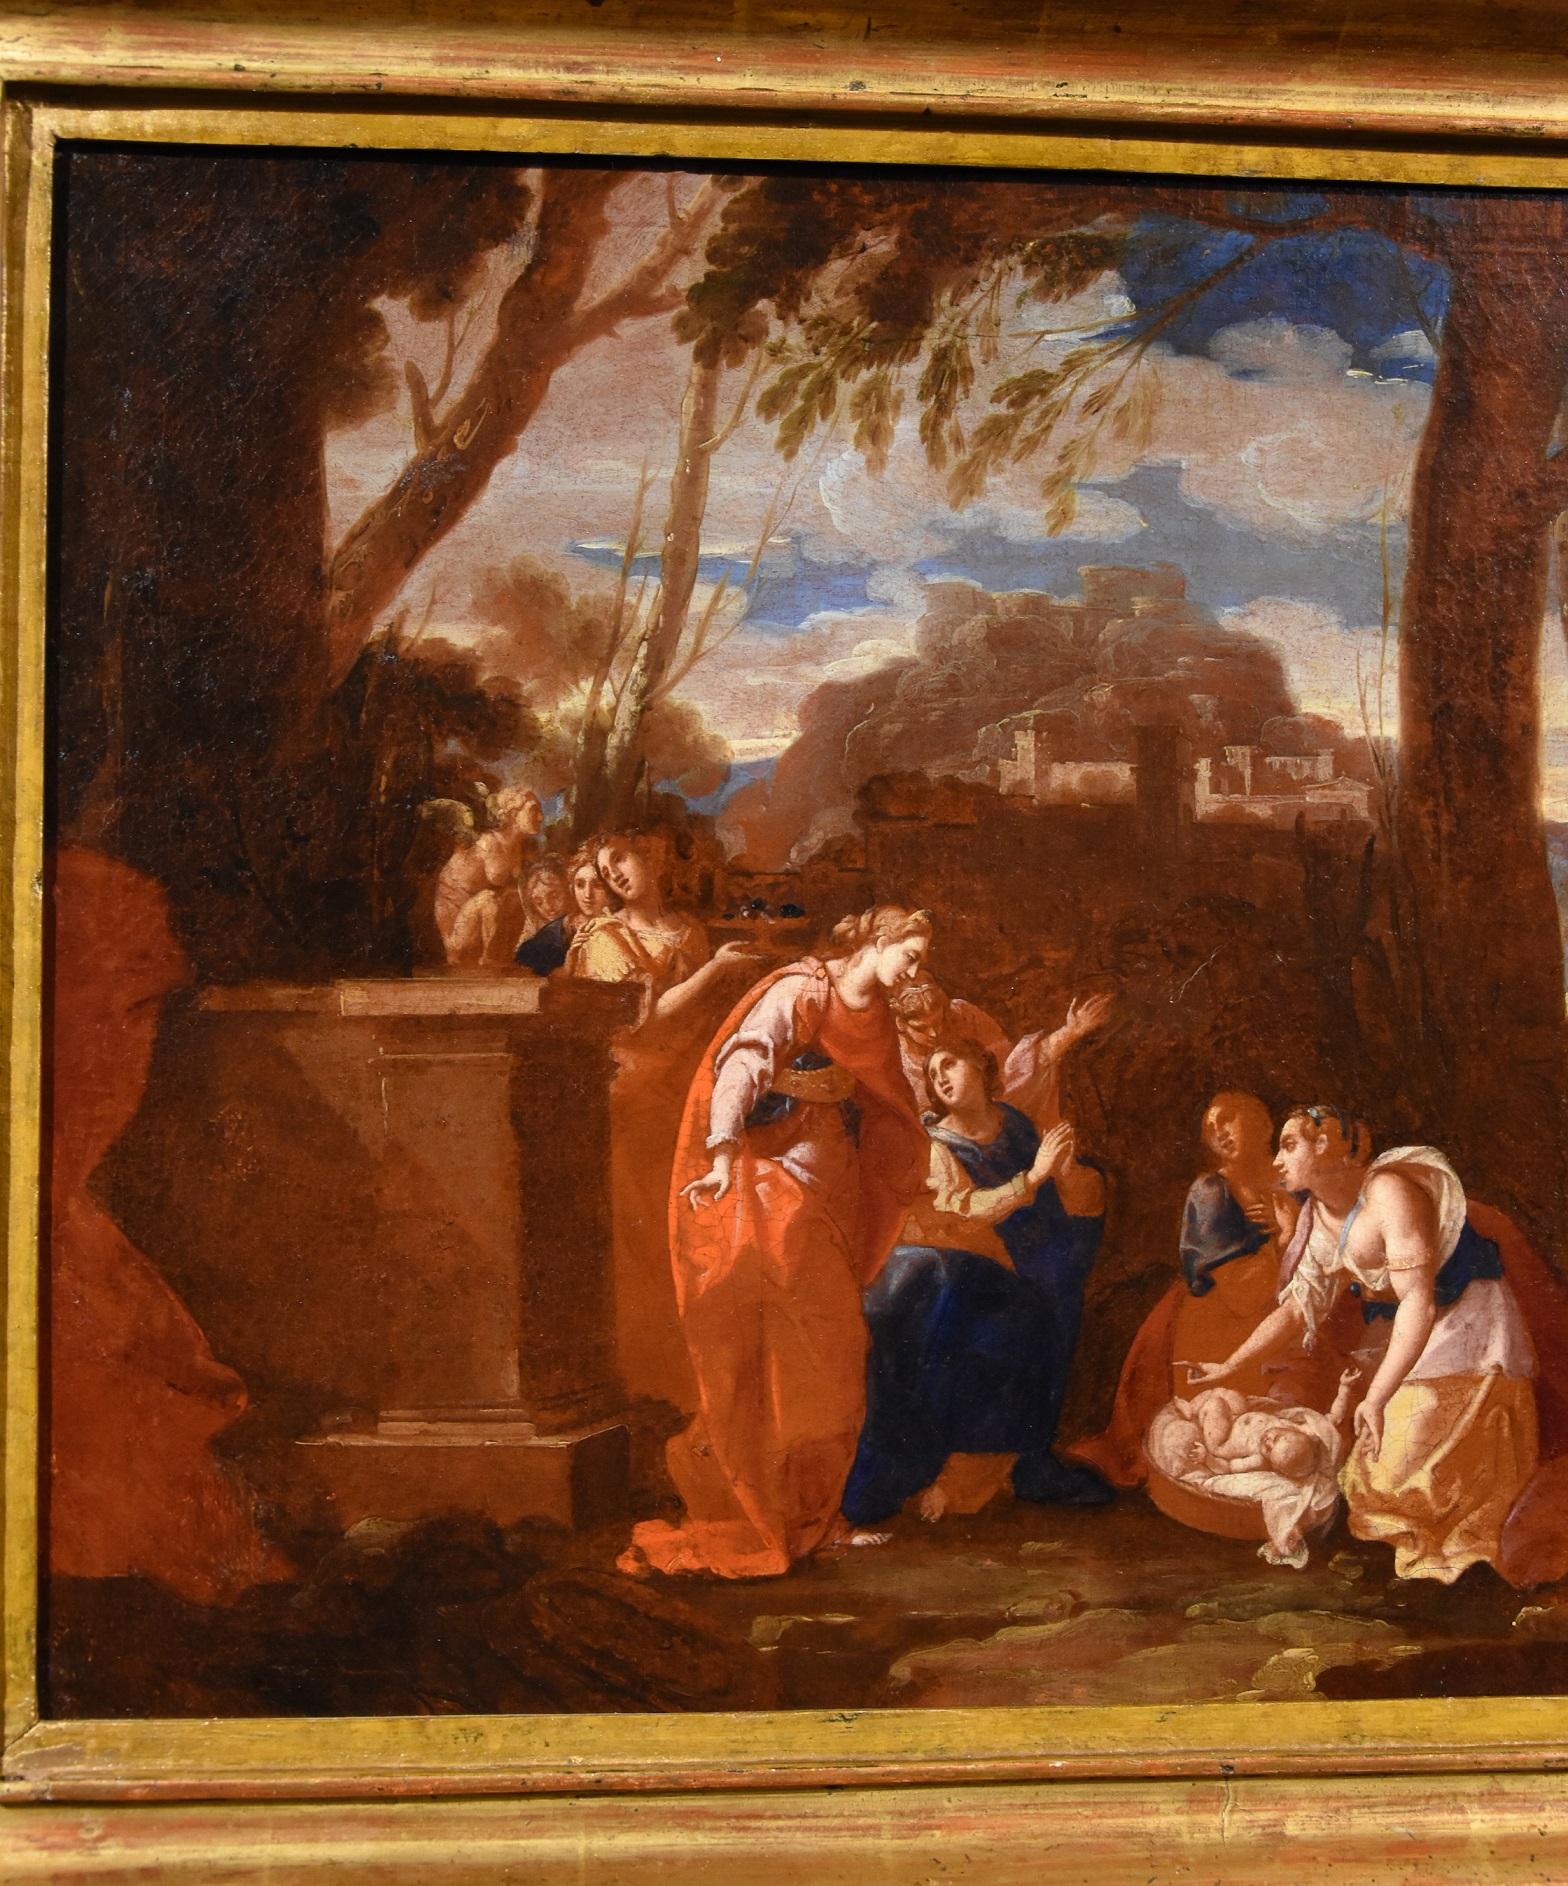 Nicolas Poussin (Les Andelys 1594 - Rom 1665) Werkstatt von
Der kleine Moses wird von der Tochter des Pharaos gefunden

Ölgemälde auf Leinwand
Maße: Leinwand 45 x 59 cm,
im Rahmen 57 x 71 cm.

Wir präsentieren dieses prächtige Werk, das die dem